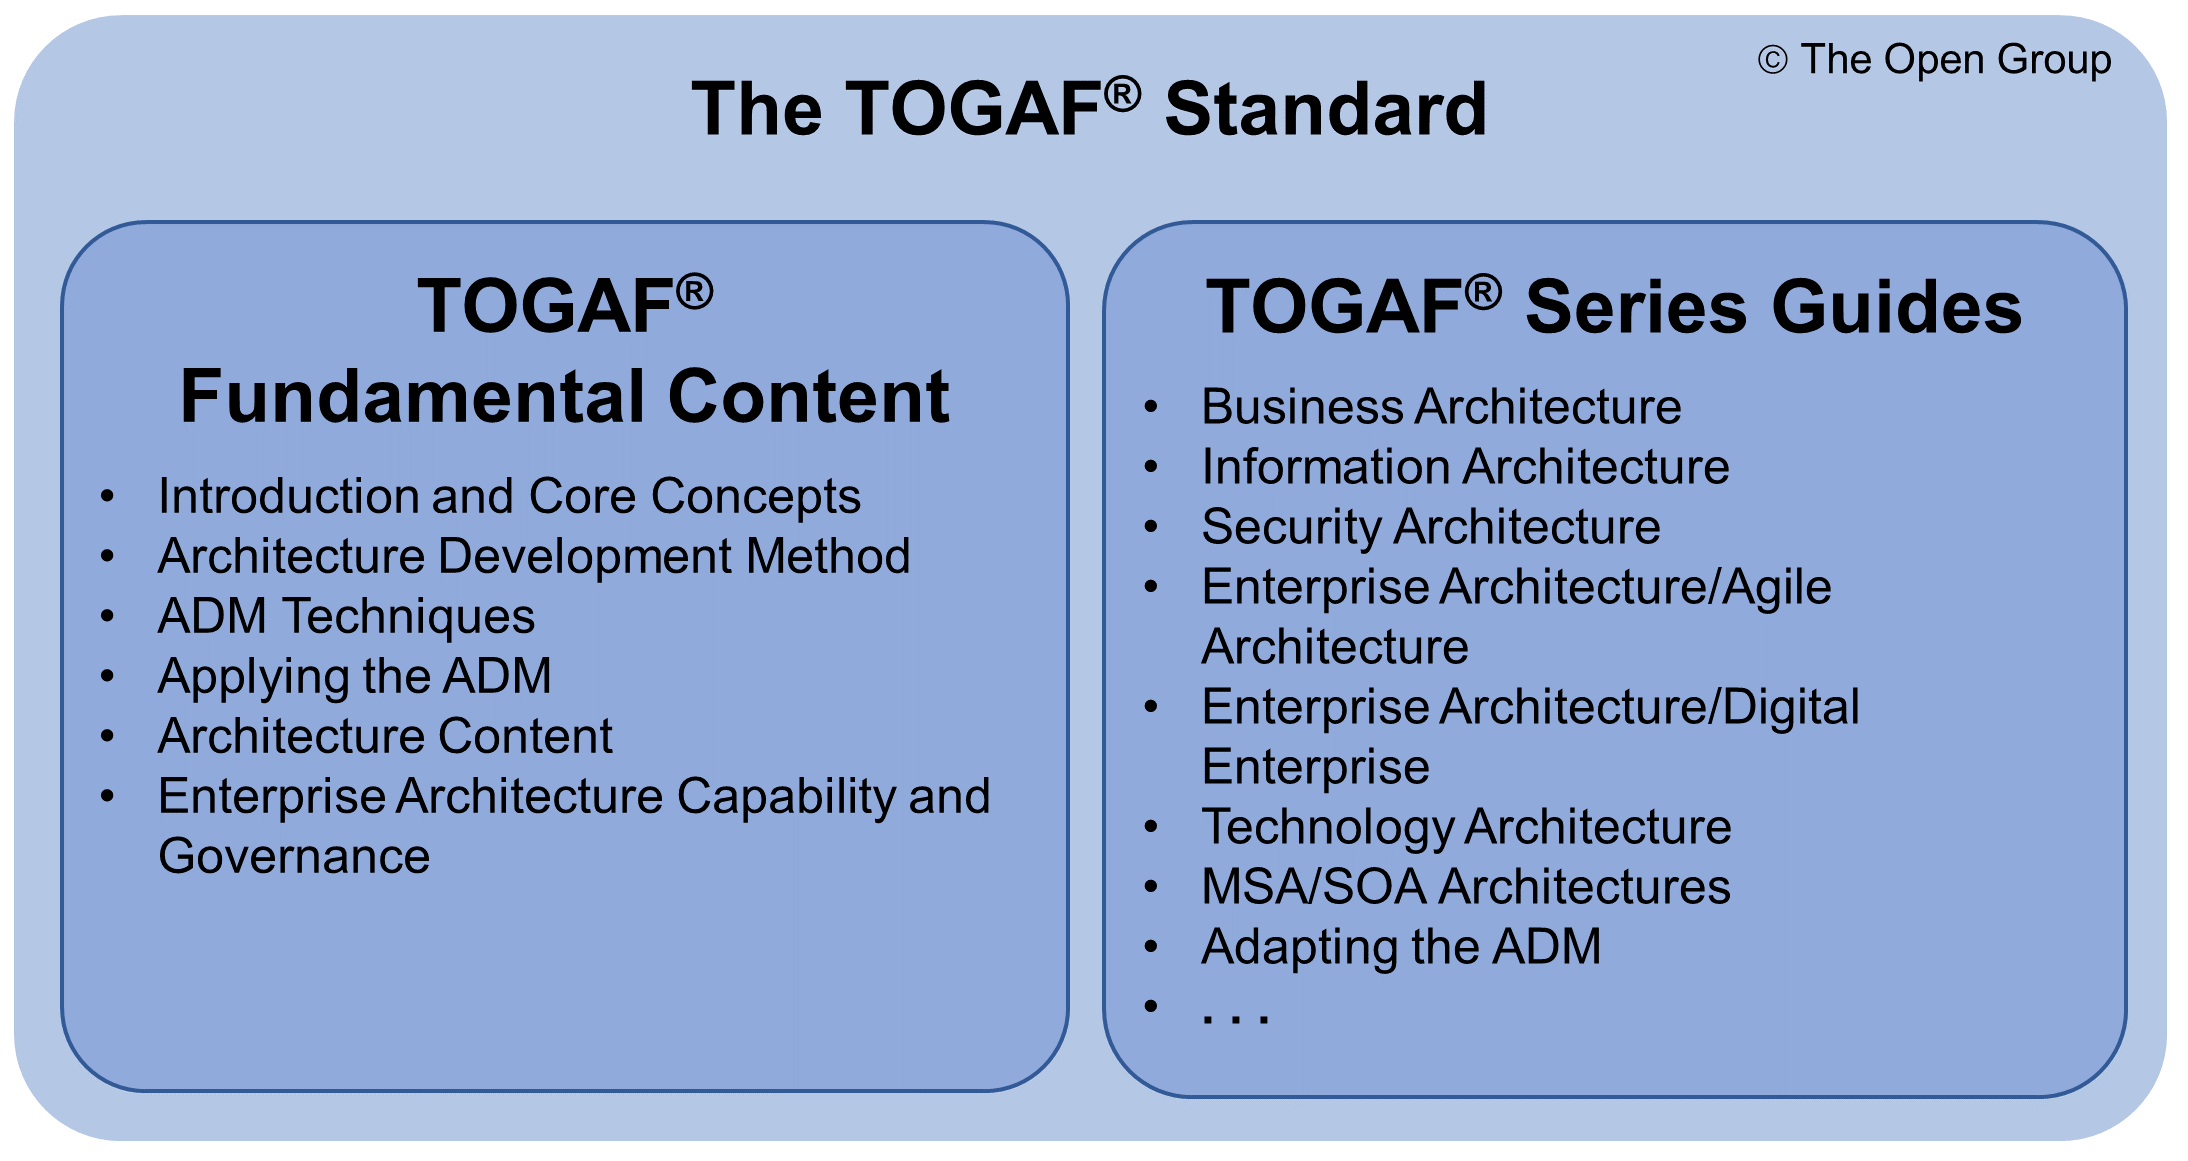 The TOGAF Standard